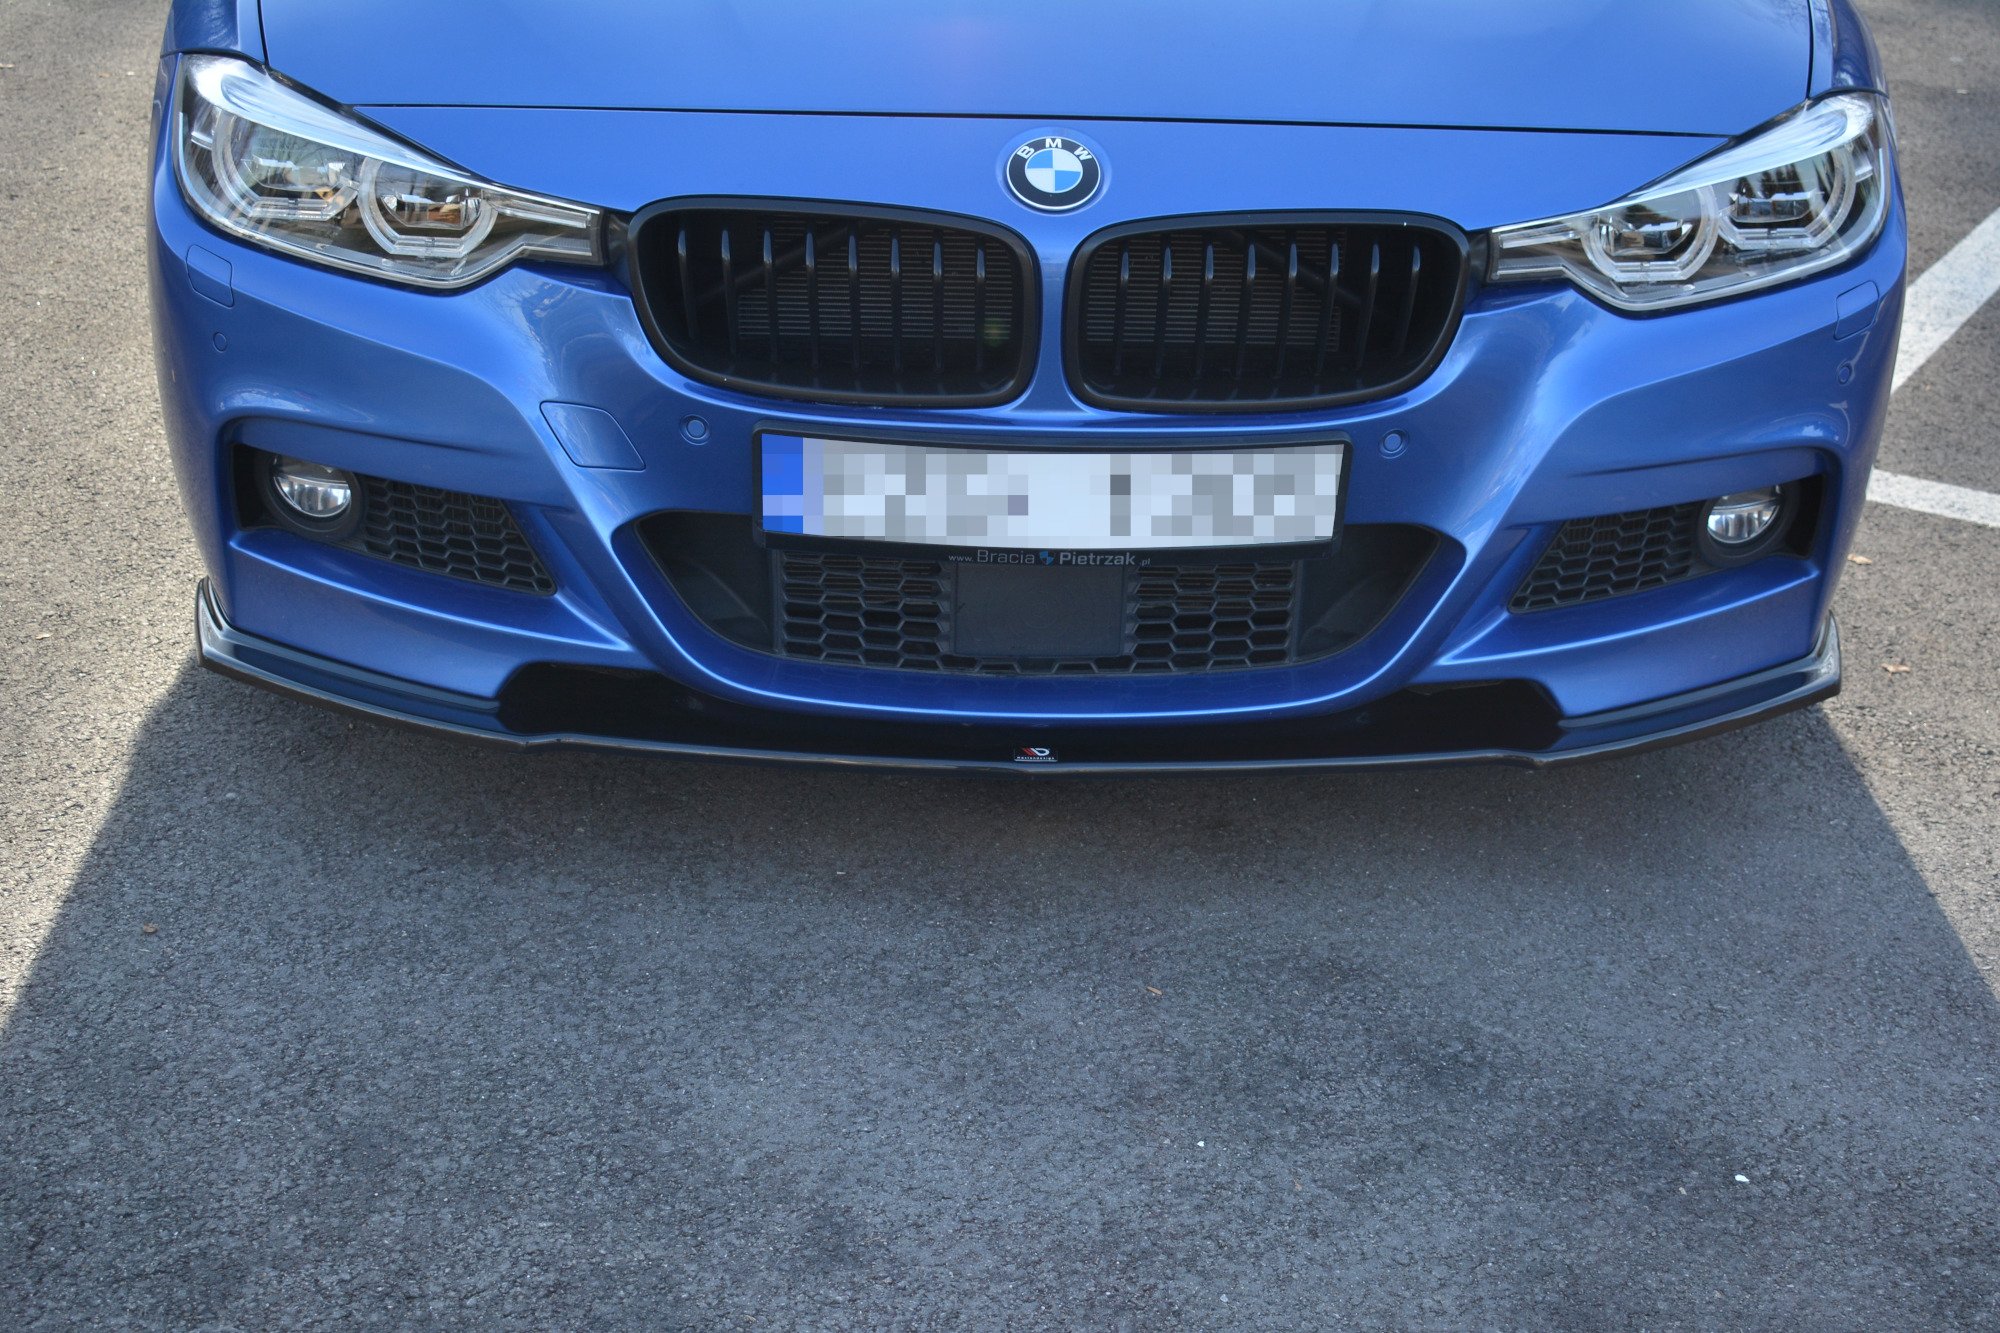 Maxton Design Seitenschweller für BMW 3er F30 mit M-Paket Limousine schwarz  hochglanz - online kaufen bei CFD